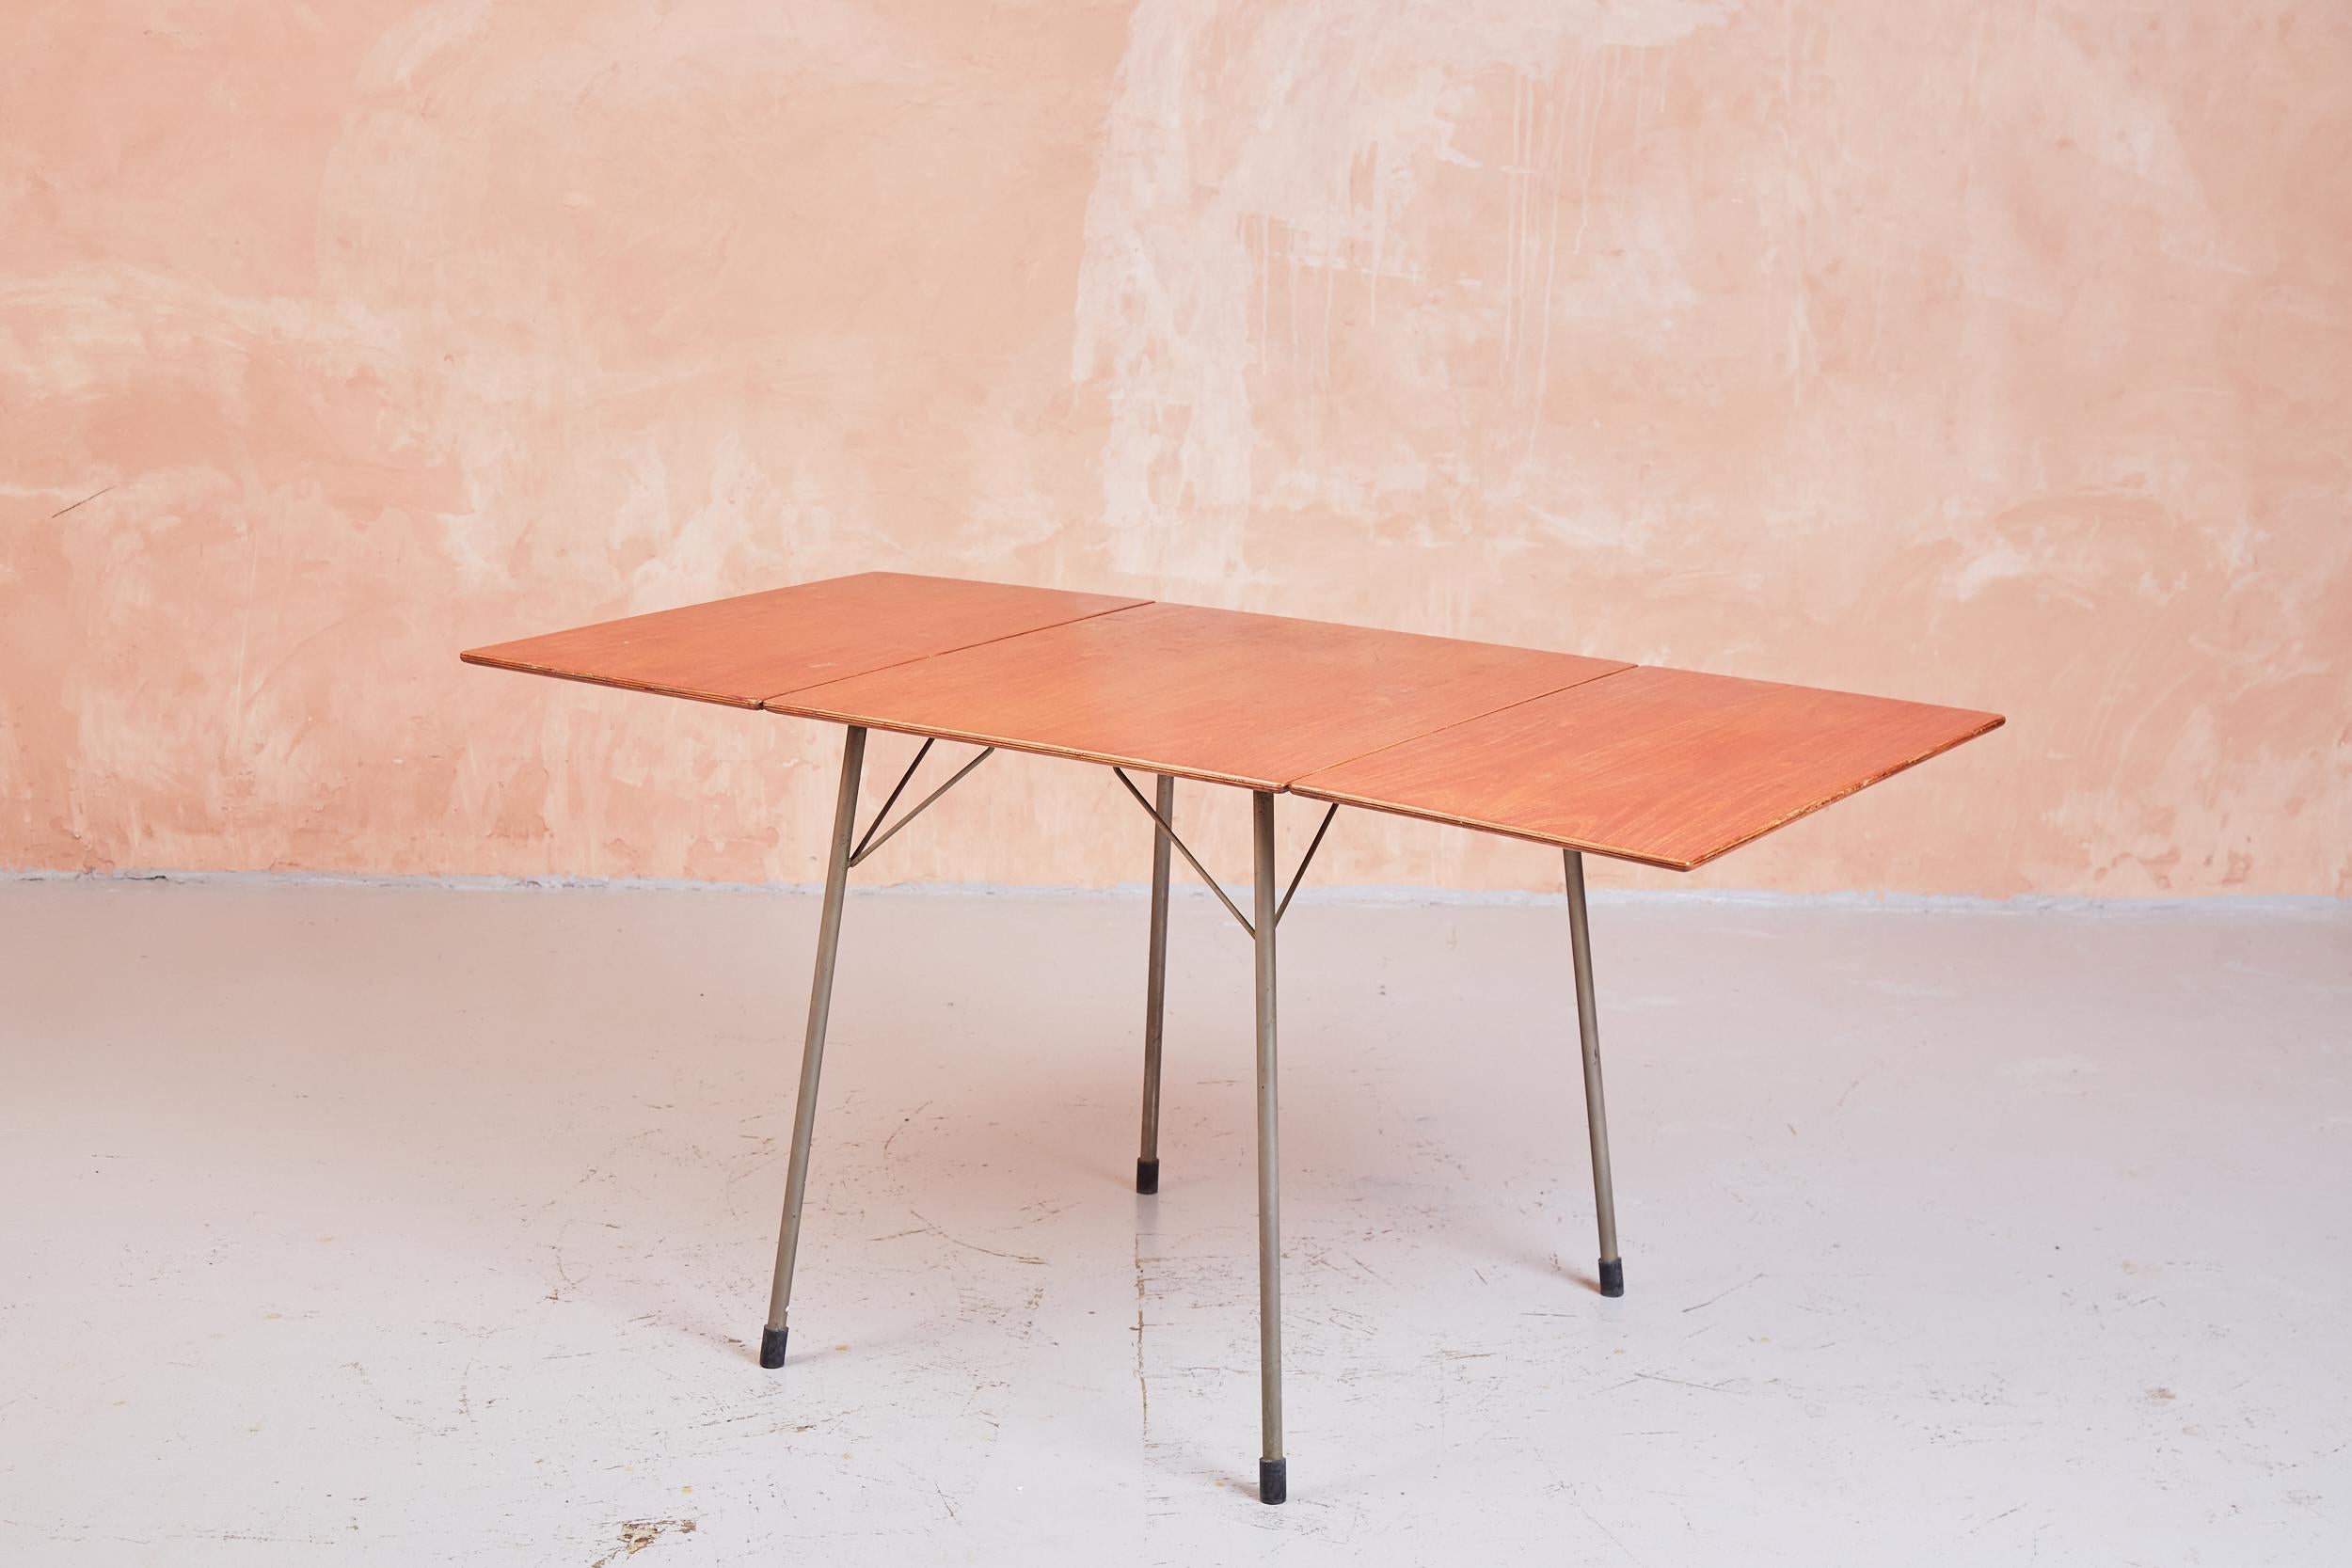 L'un des designs les plus utilitaires d'Arne Jacobsen dans les années 1950, la table 3601 repose sur des pieds en aluminium avec des viroles en caoutchouc, avec un plateau en contreplaqué plaqué teck. Un design simple, presque industriel, qui allie